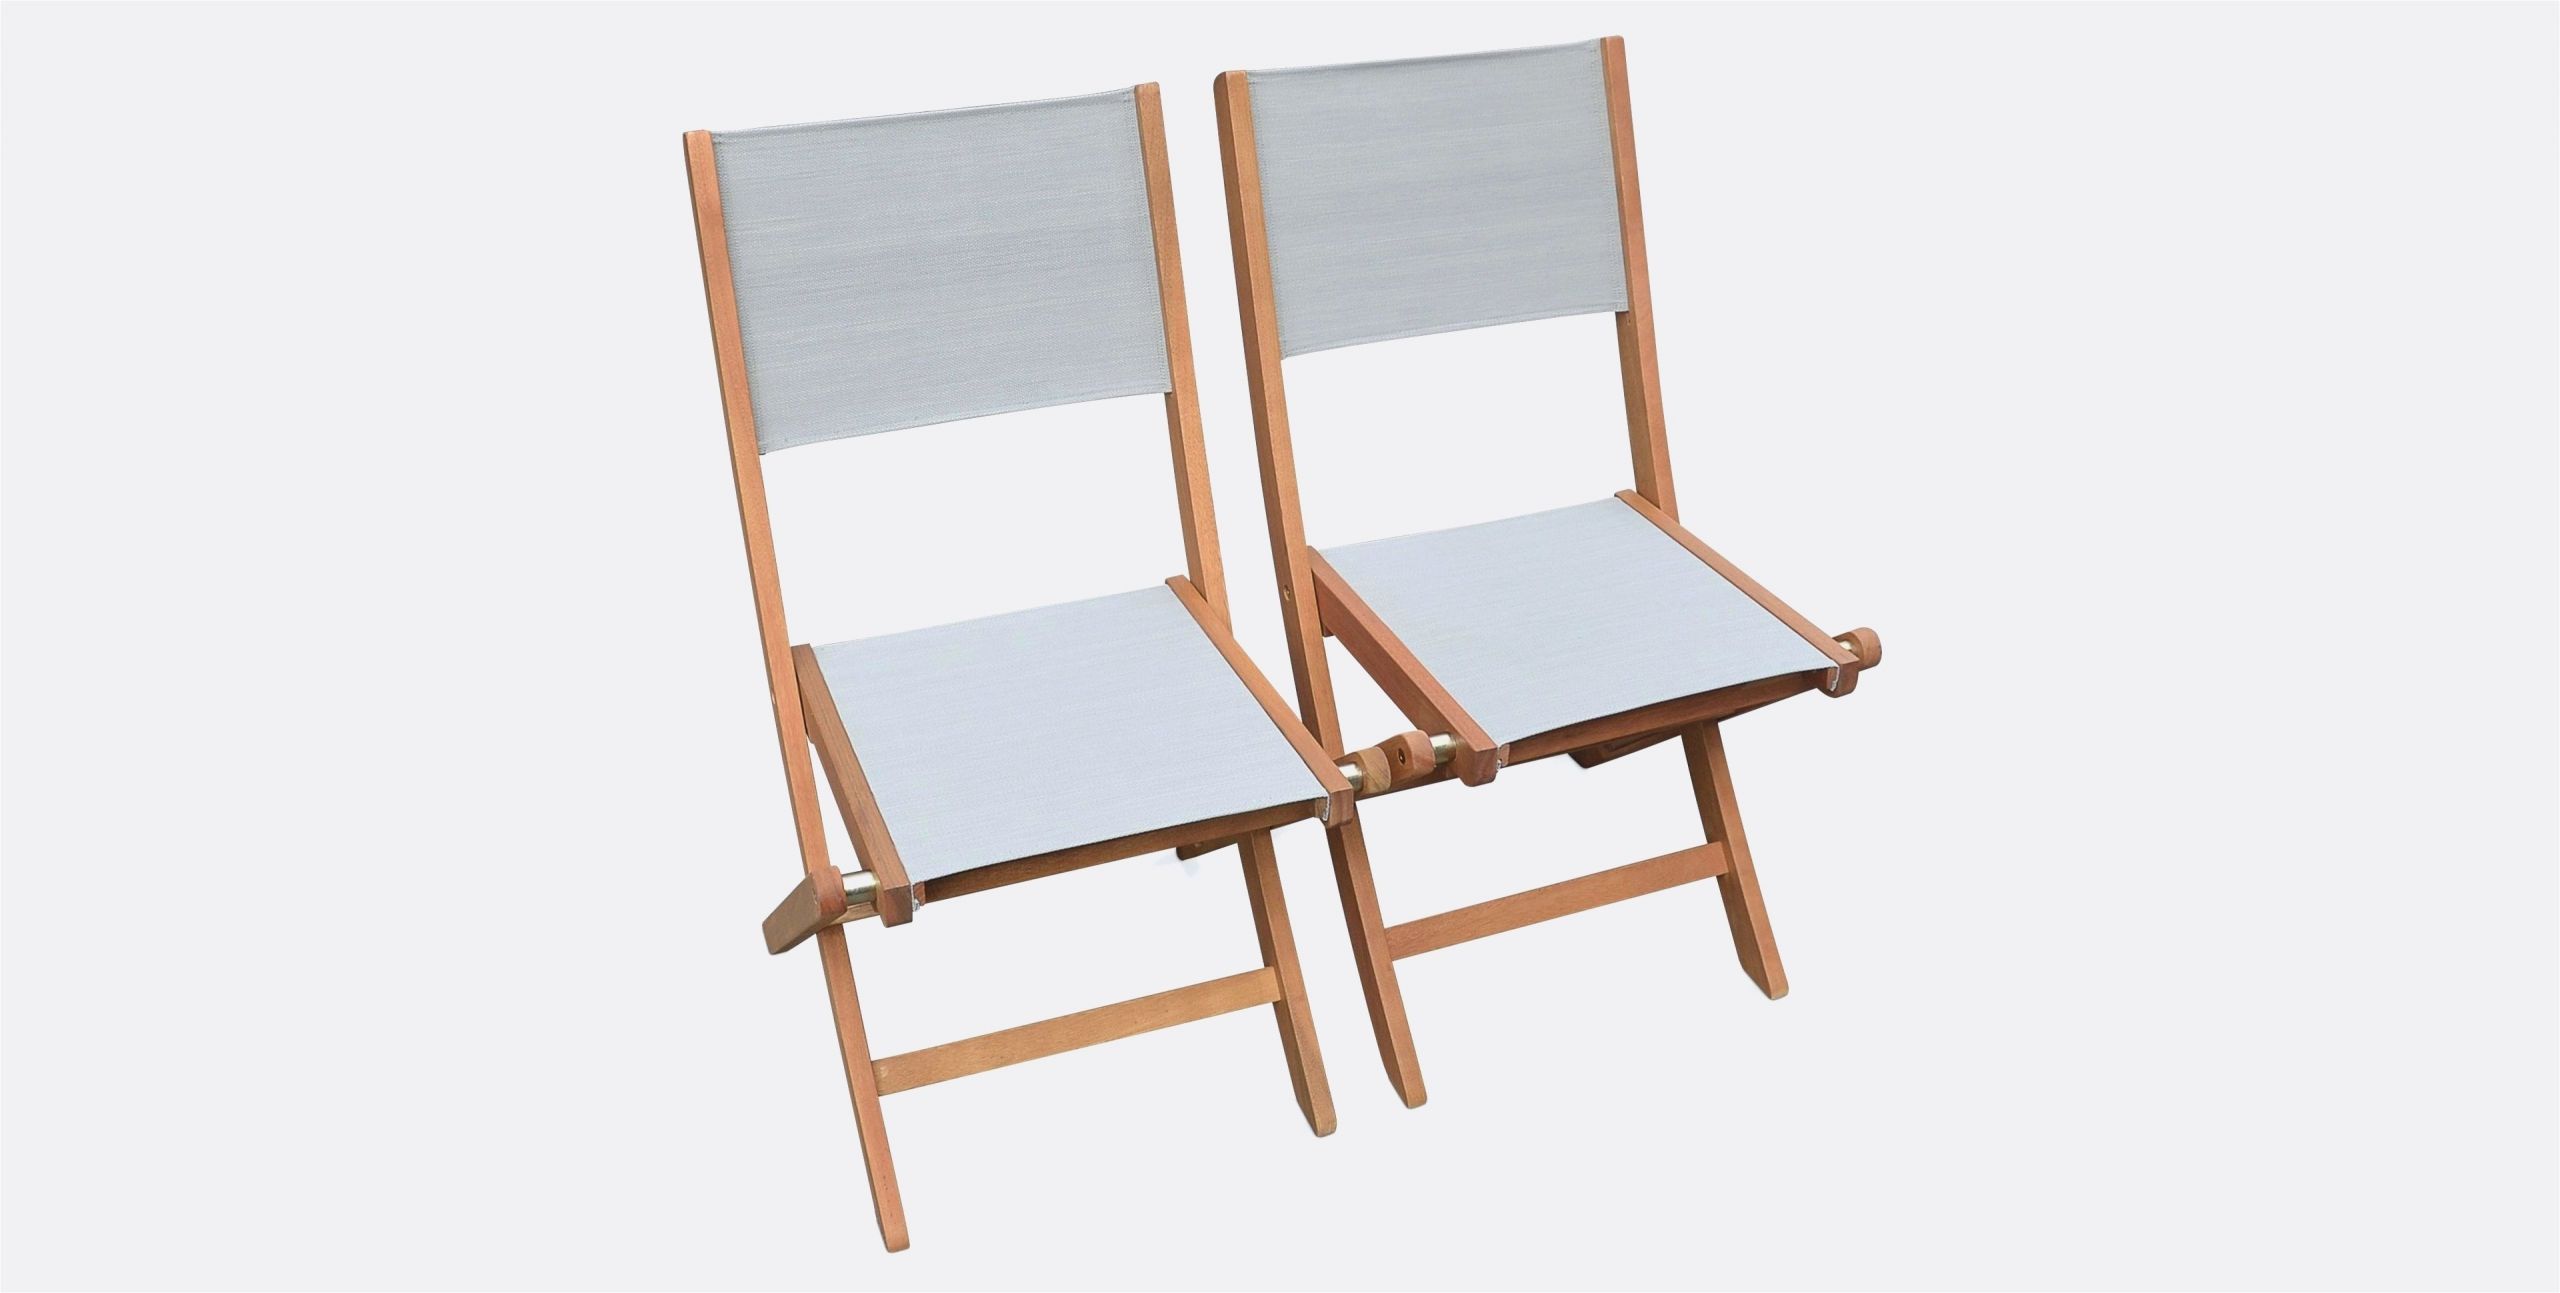 chaise en bois pas cher charmant de chaise scandinave tissu pas cher luckytroll de chaise en bois pas cher scaled